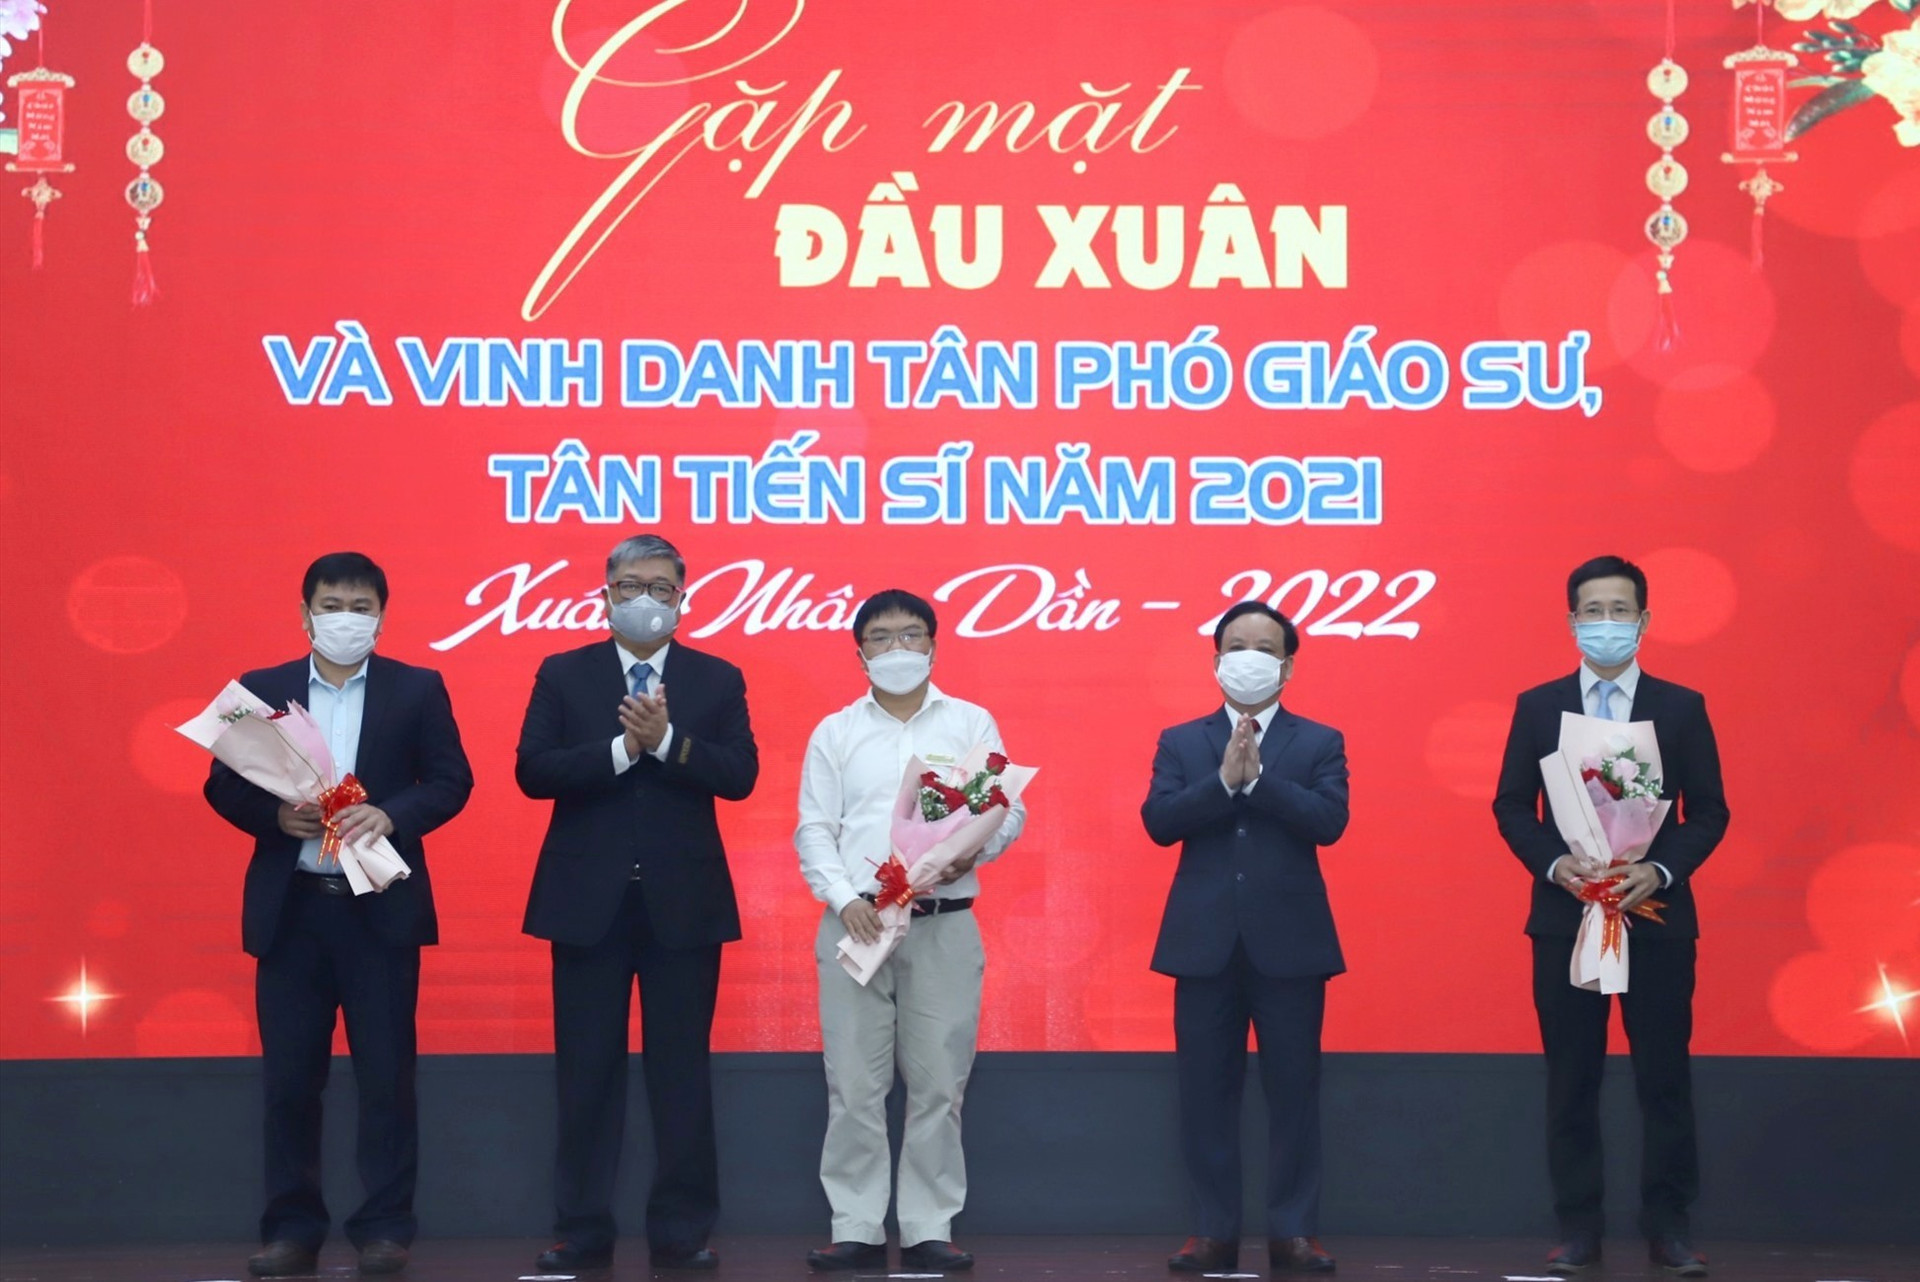 Giám đốc ĐH Đà Nẵng tặng hoa, chúc mứng các Phó giáo sư của ĐH Đà Nẵng năm 2021. Ảnh XL